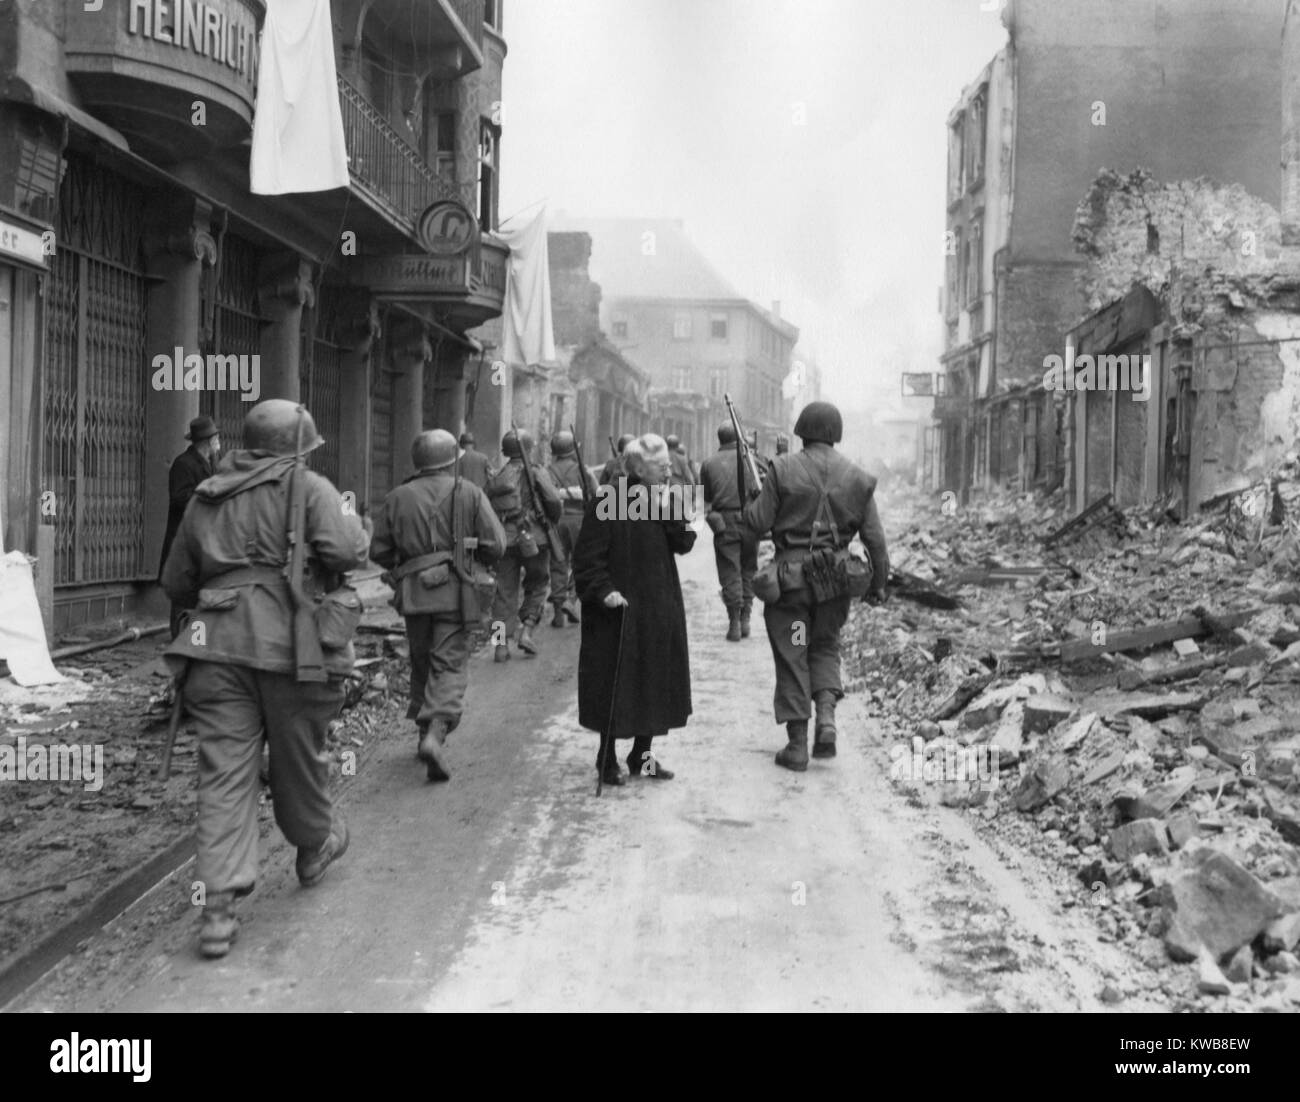 Comme les fantassins mars à une ville allemande, une vieille femme choqué regarde un les ruines. Mars-avril 1945. L'Allemagne, la seconde guerre mondiale 2. (BSLOC 2014 8 83) Banque D'Images